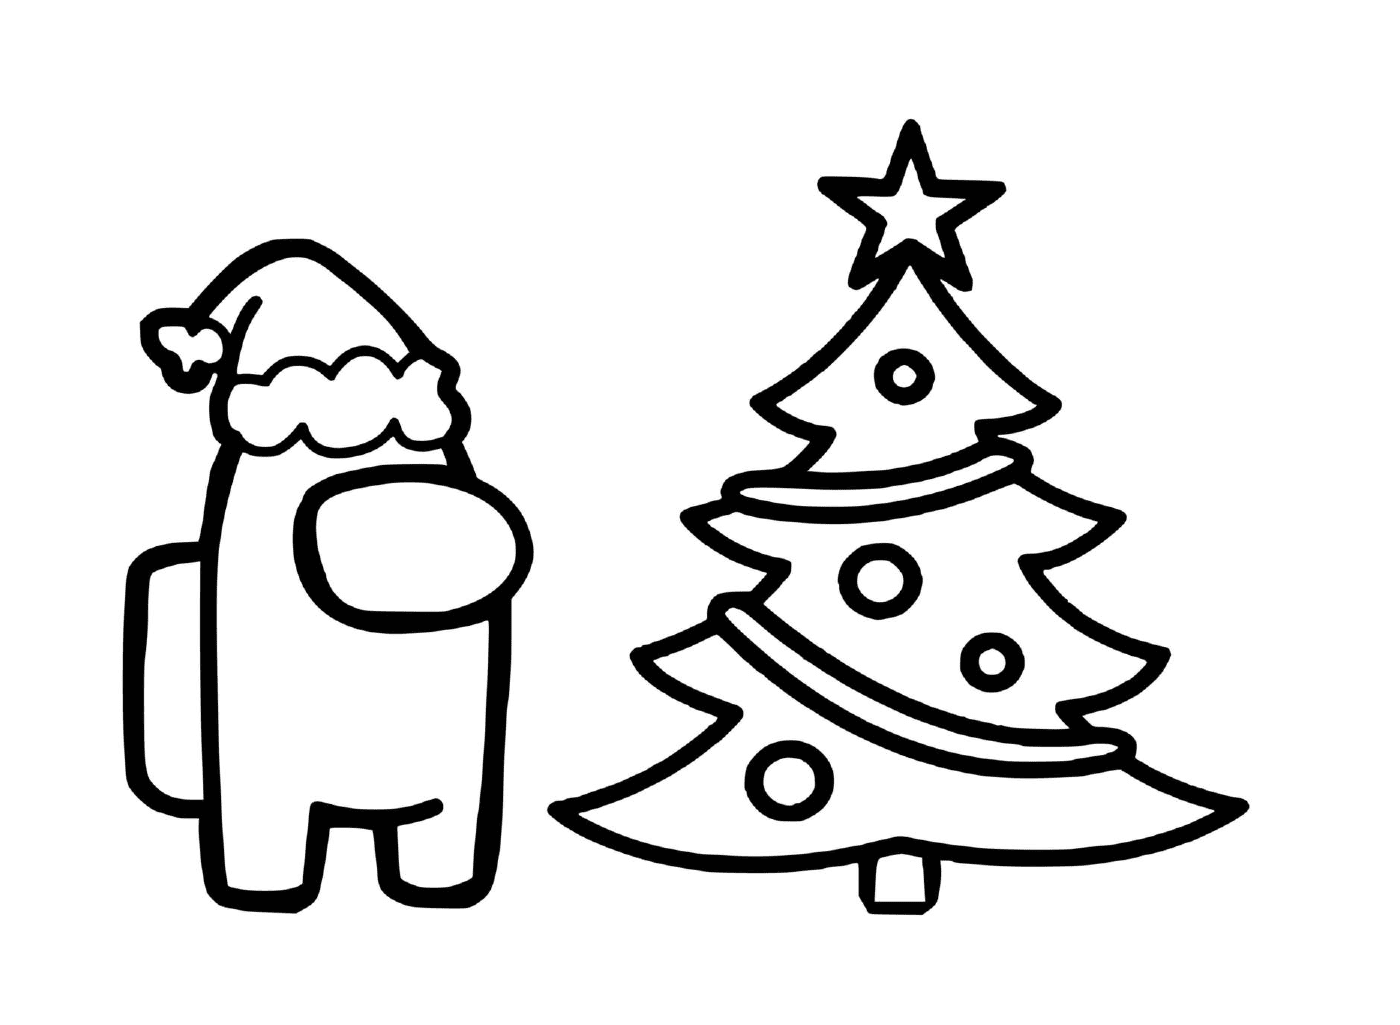  Gnome and Christmas tree 